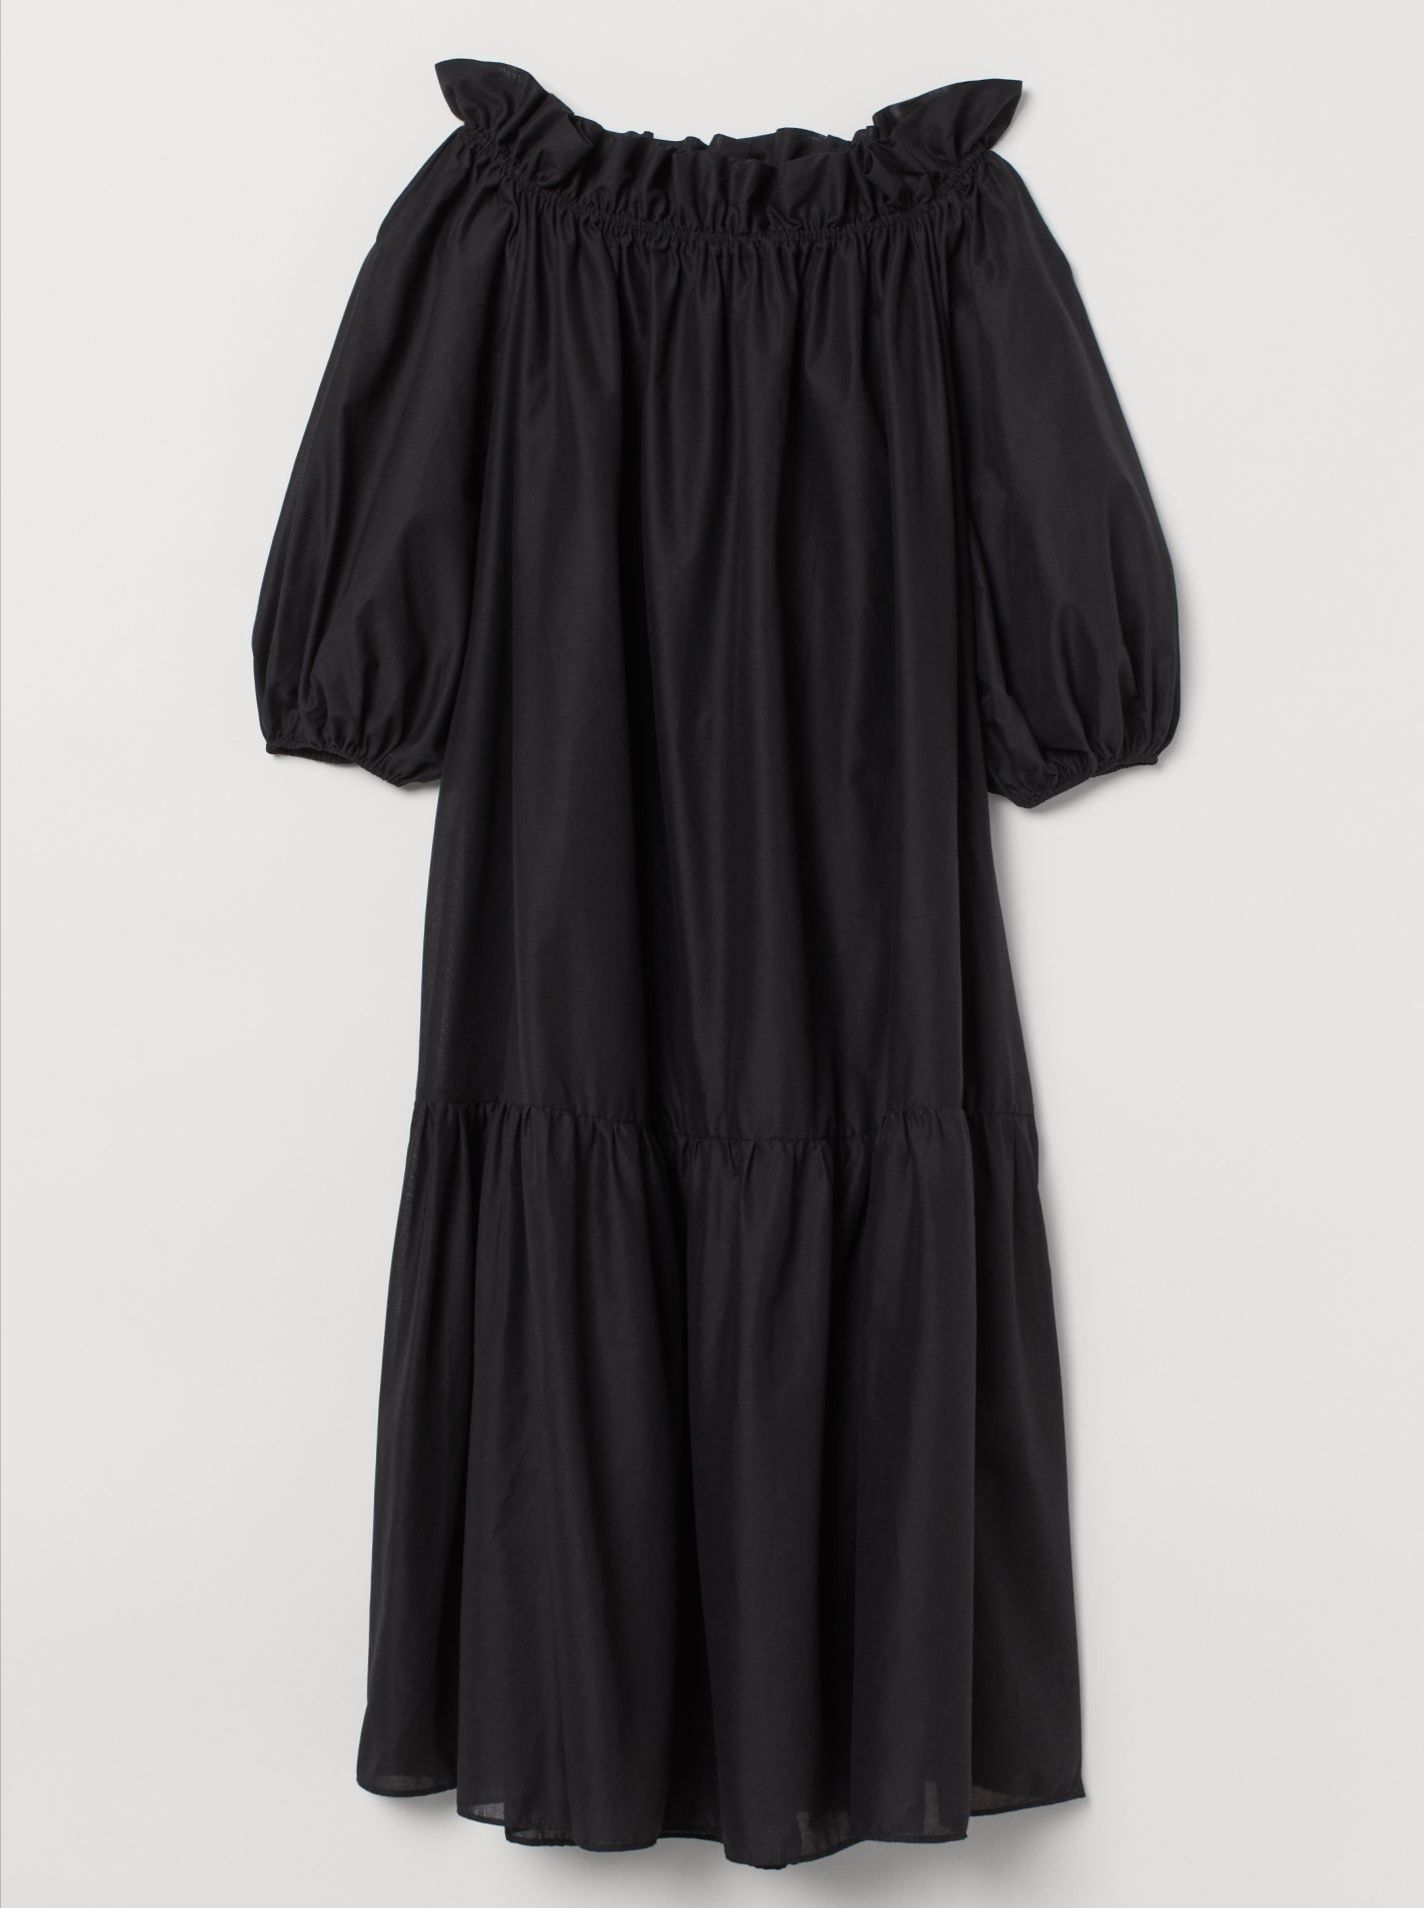 Платье H&M женское чёрное объёмное M-L